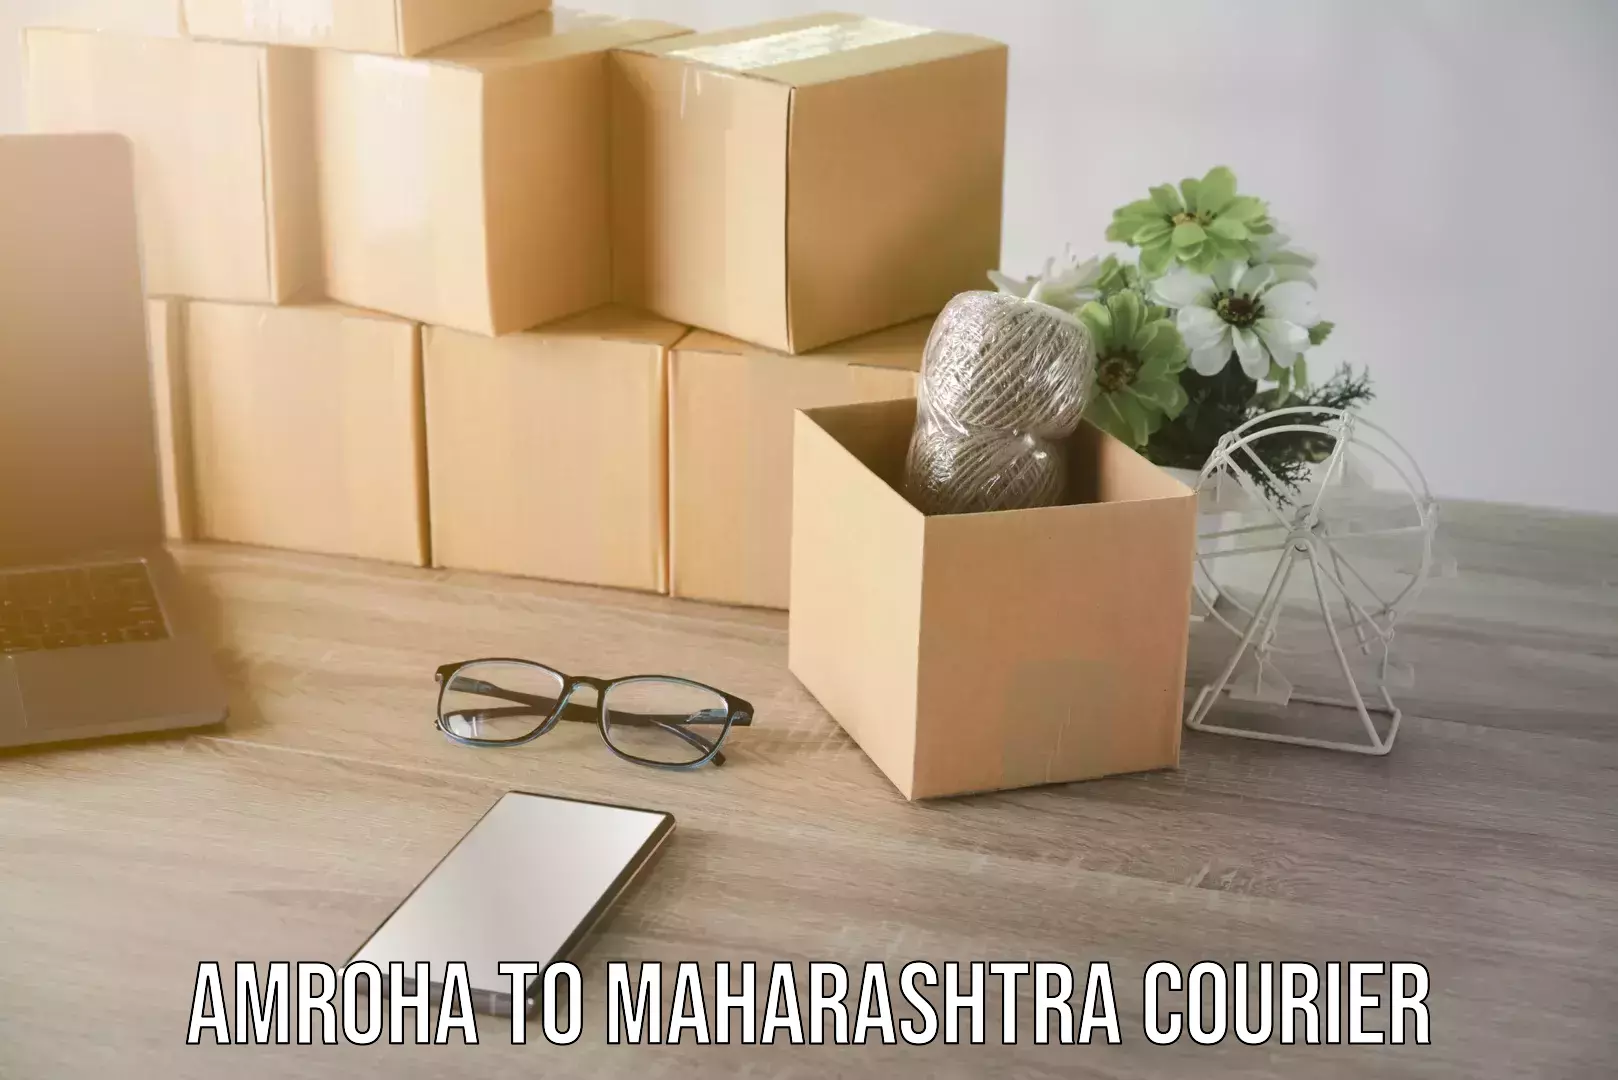 Pharmaceutical courier Amroha to Maharashtra